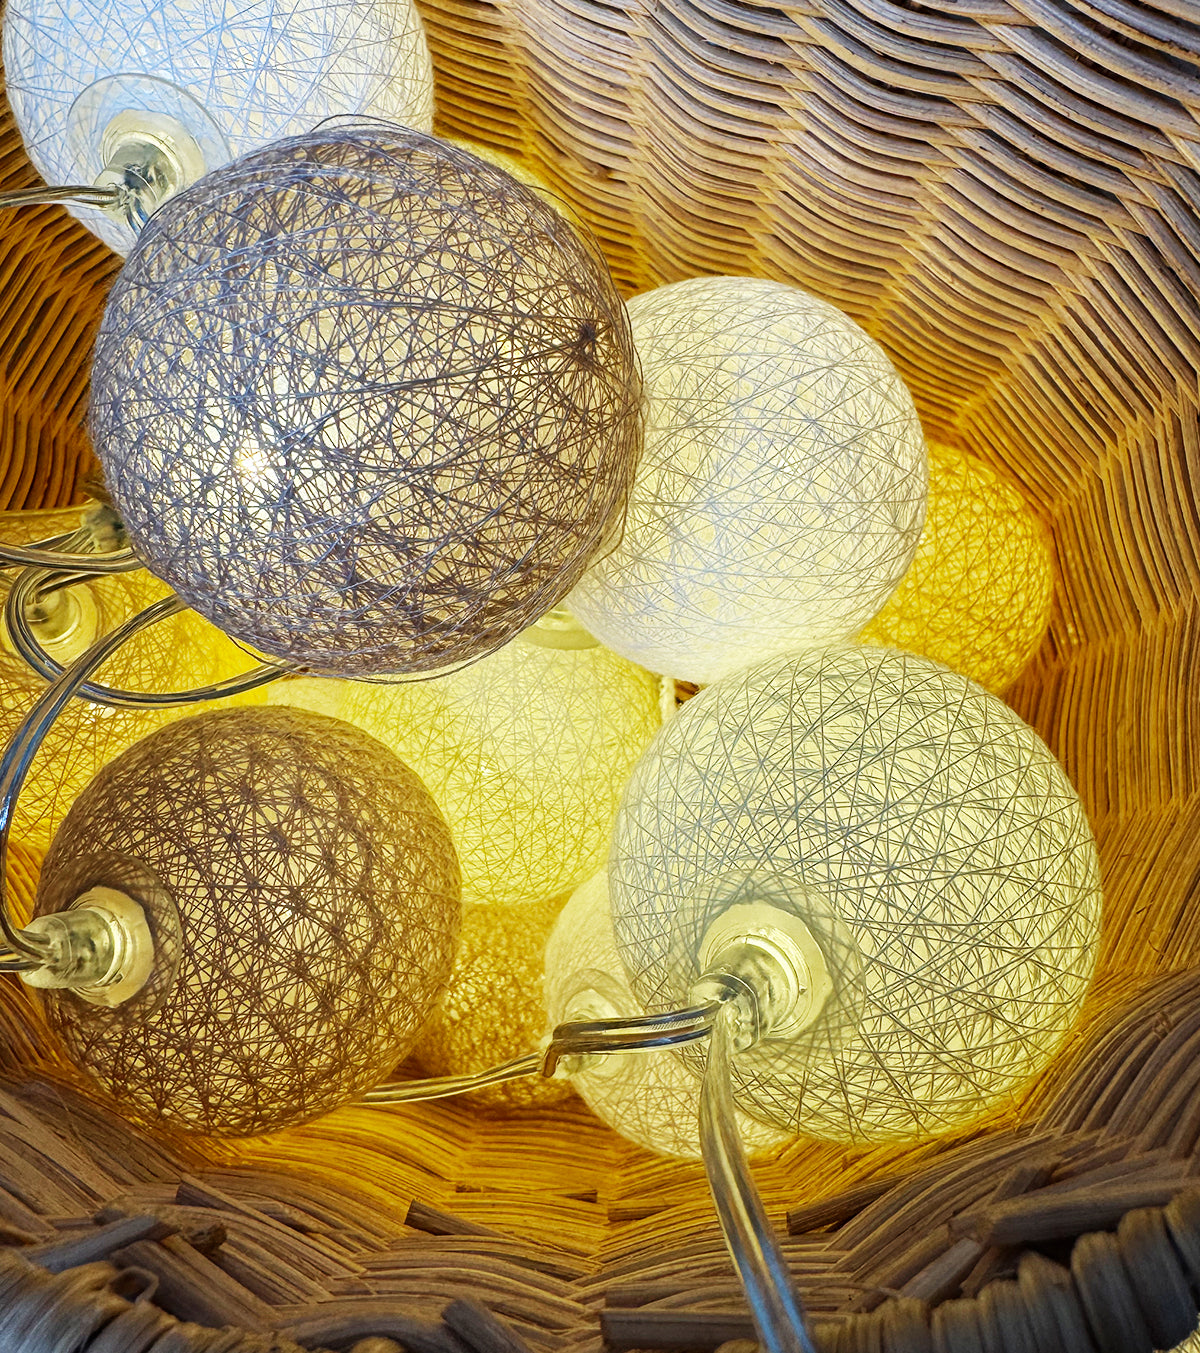 Guirlande lumineuse 24 boules de coton (beige) - Éclairage décoratif intérieur